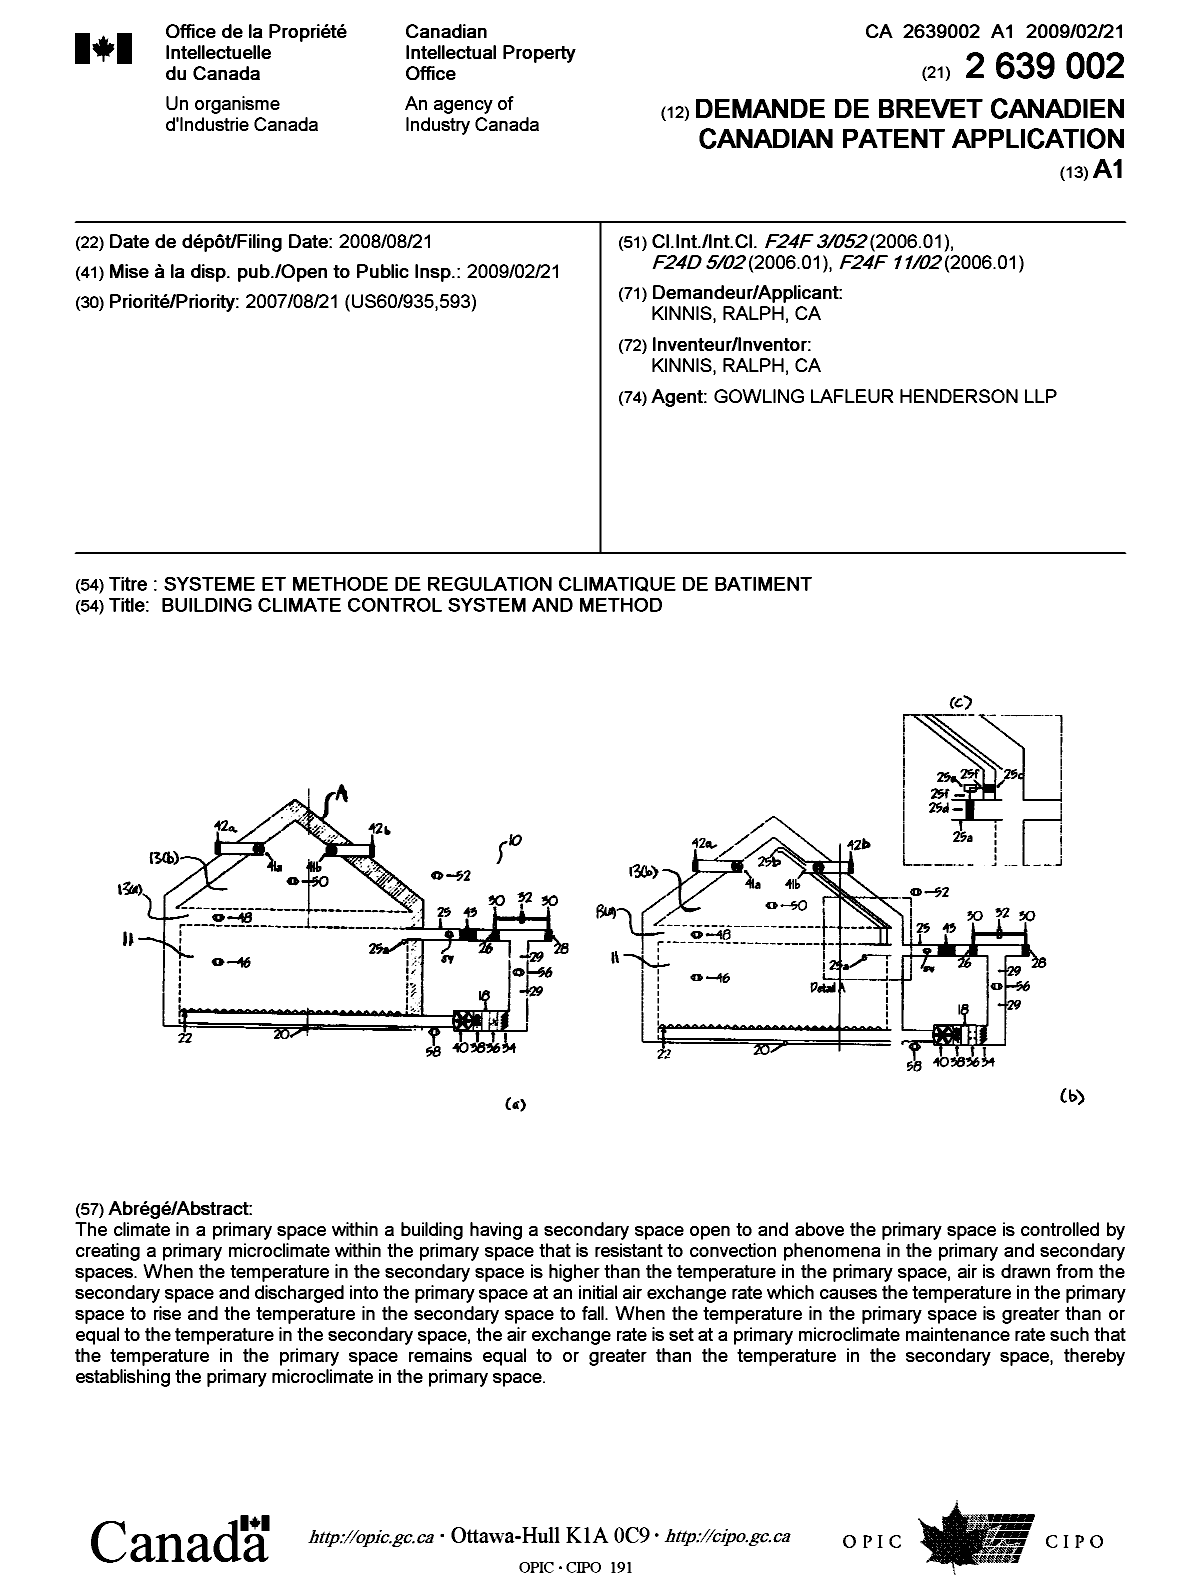 Document de brevet canadien 2639002. Page couverture 20090130. Image 1 de 1